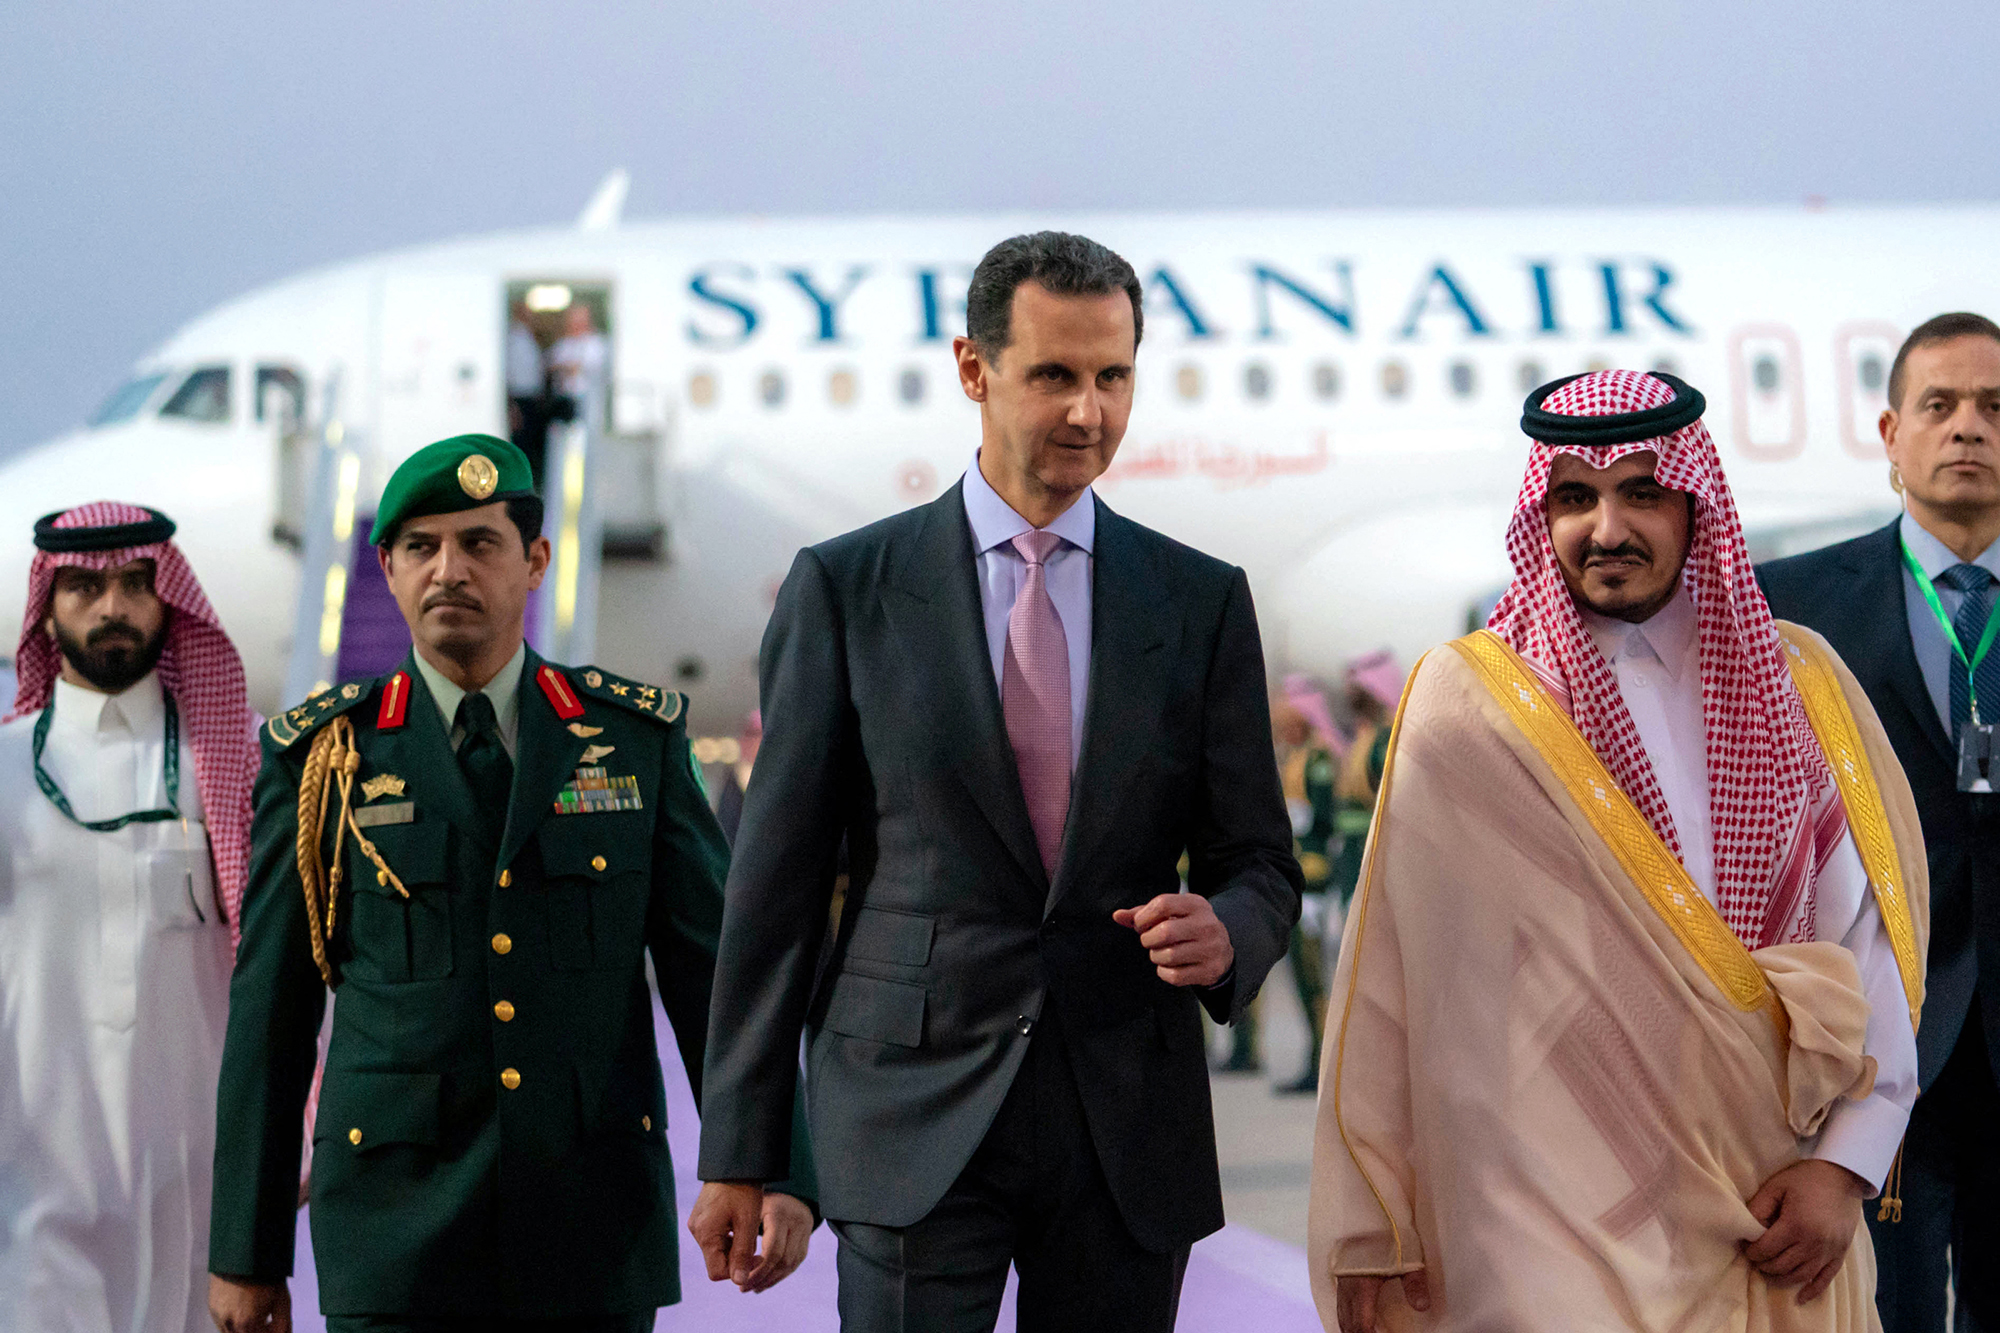 Der stellvertretende Emir von Mekka, Prinz Badr bin Sultan bin Abdulaziz (re.),empfängt den syrischen Präsidenten Bashar al-Assad in Jeddah am Vorabend des Gipfels der Arabischen Liga (Bild: Syrian Presidency Facebook page/AFP)